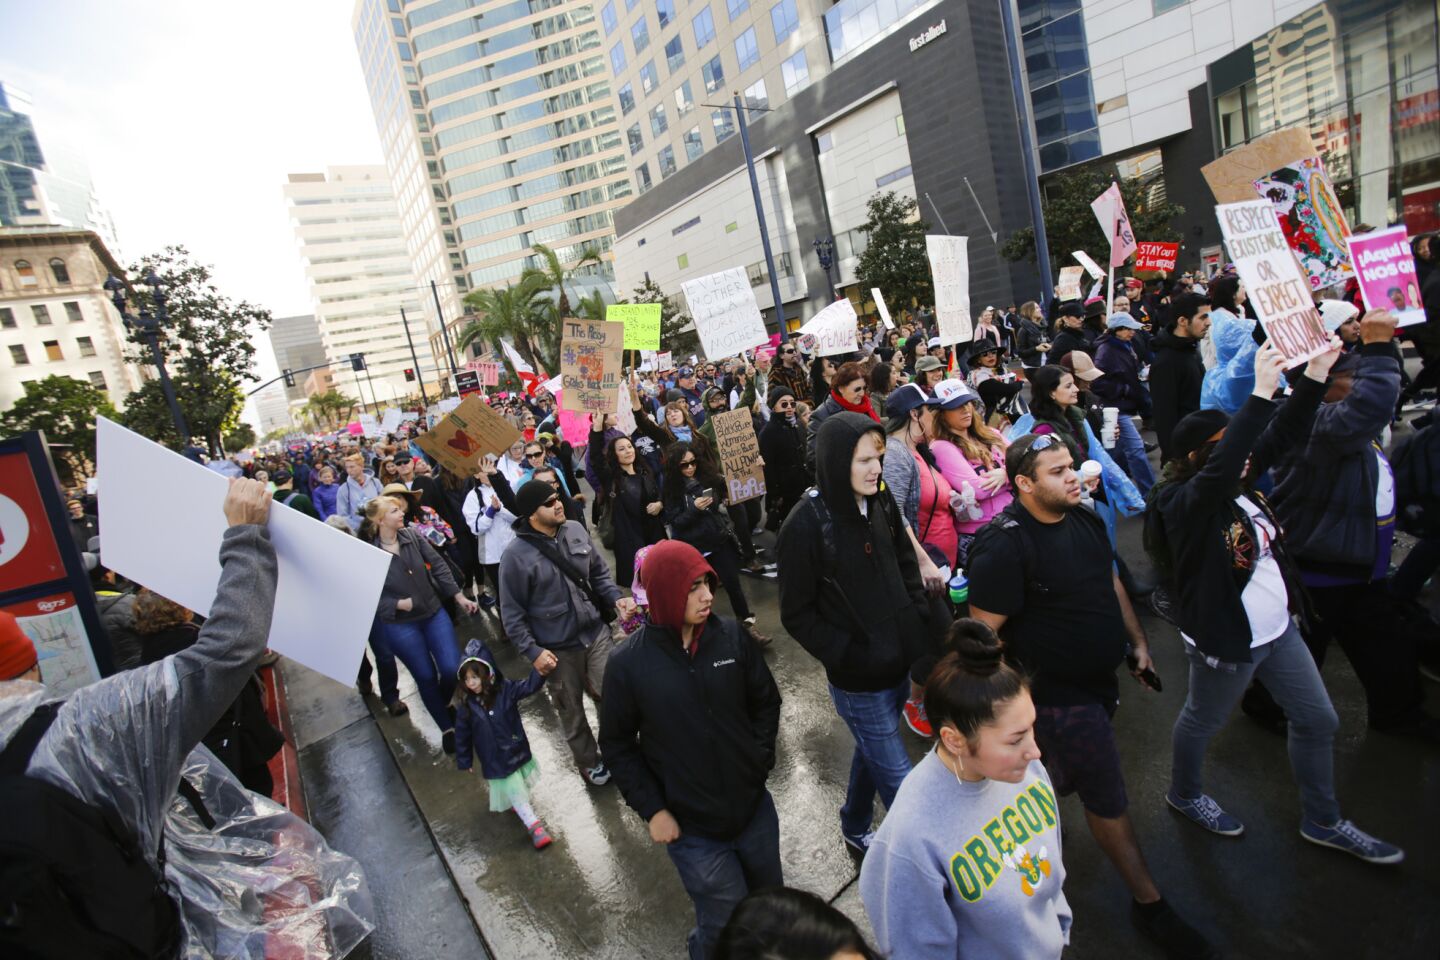 San Diego Women's March